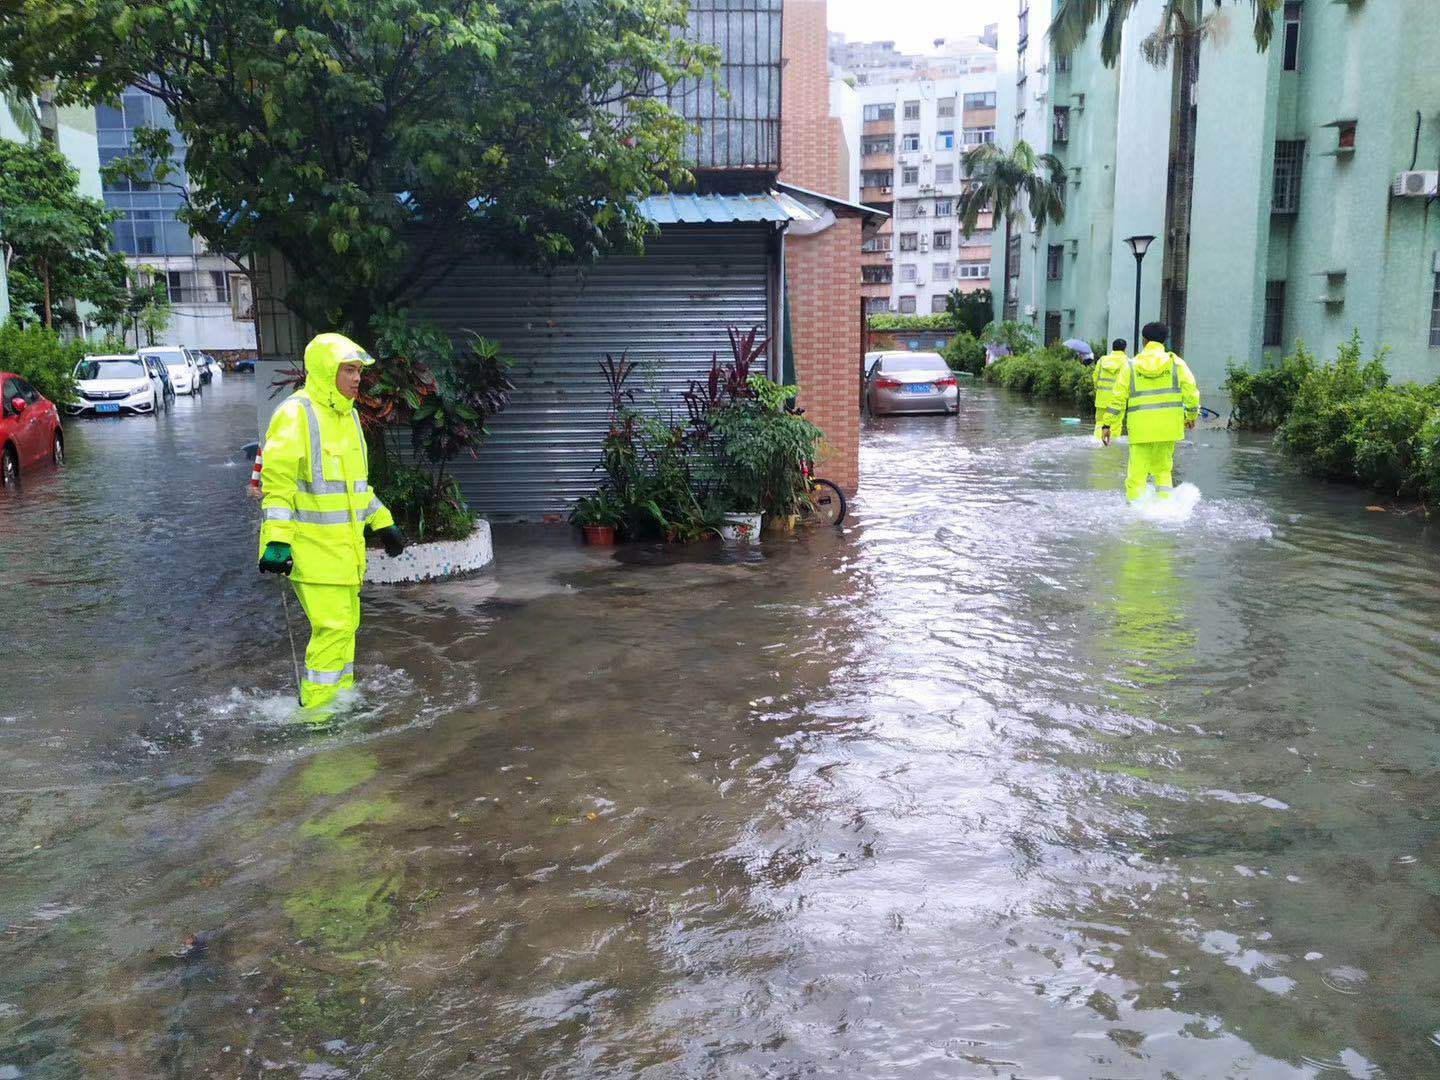 有片！暴雨持續 珠海多條街道水浸 - 澳門力報官網